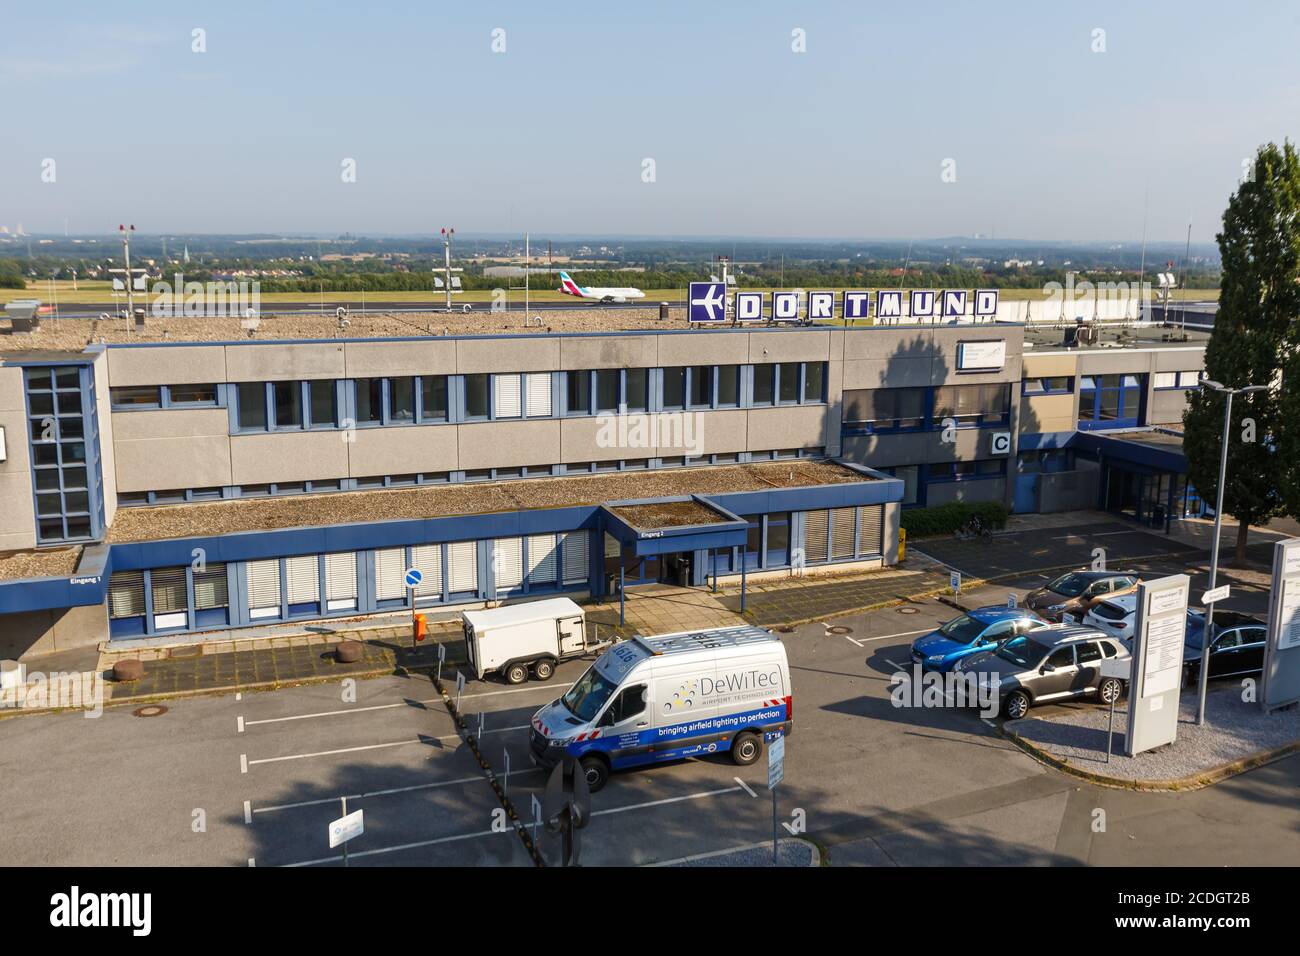 Dortmund, Allemagne - 10 août 2020 : terminal de l'aviation générale de l'aéroport de Dortmund (DTM) en Allemagne. Banque D'Images